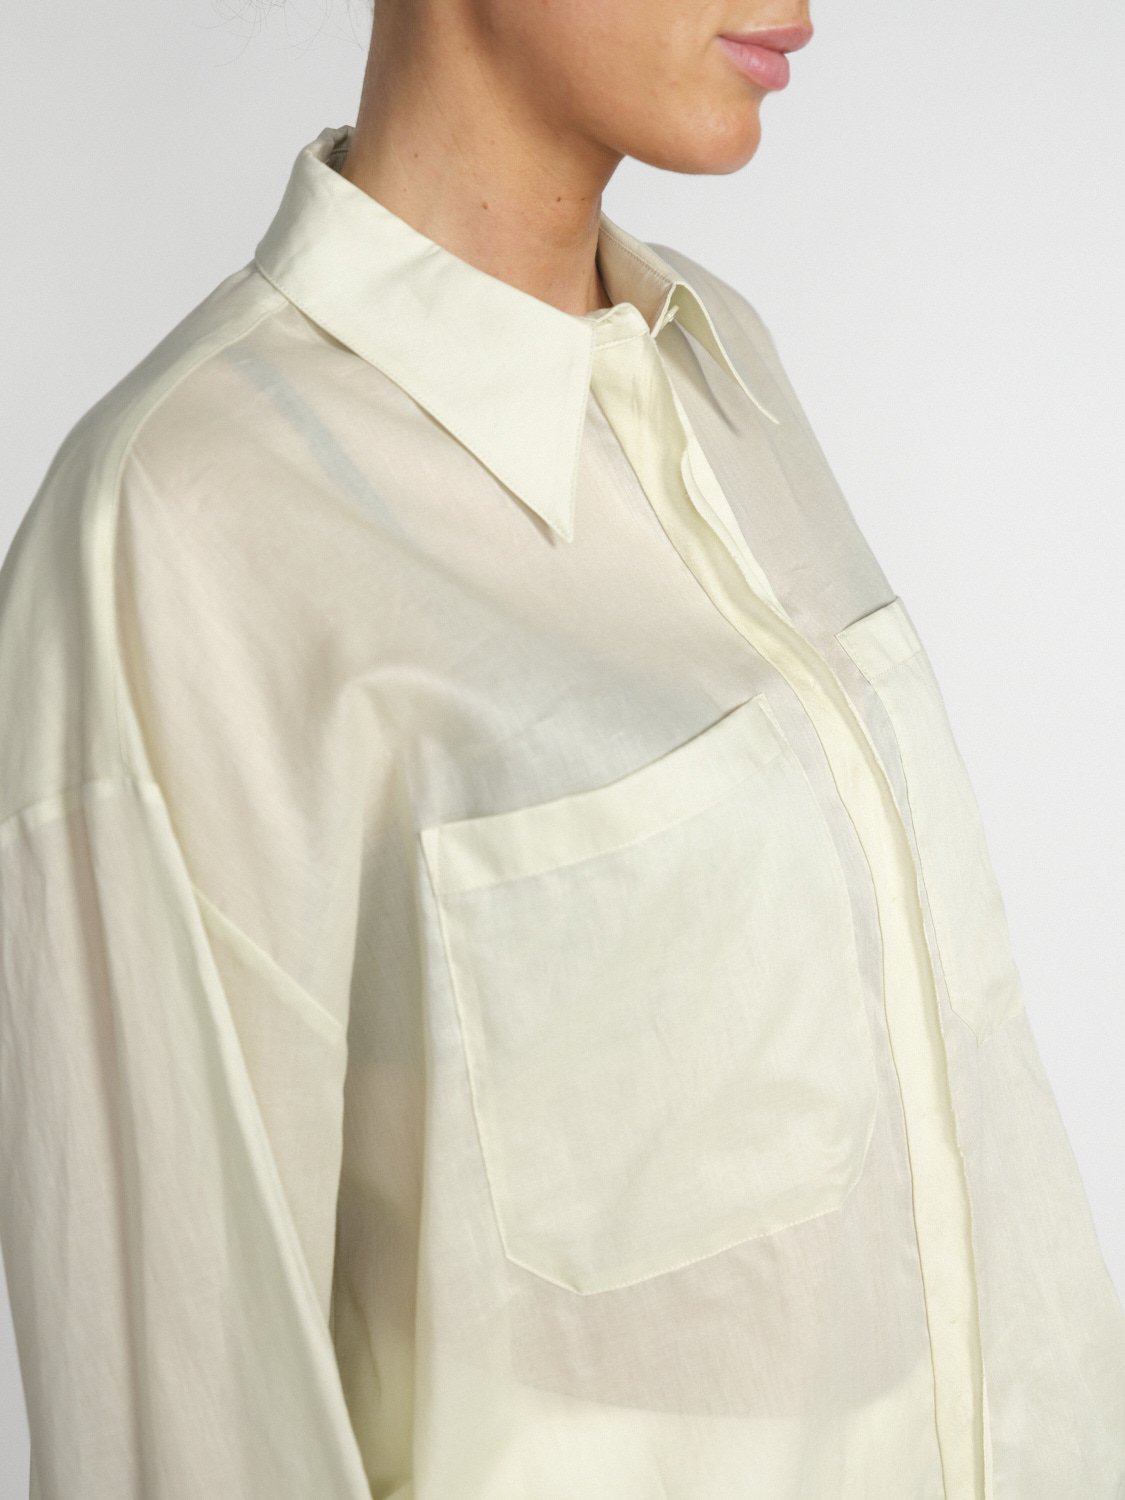 Dorothee Schumacher Fantasy - Leicht transparente Bluse aus Baumwolle 	  -blanco XS